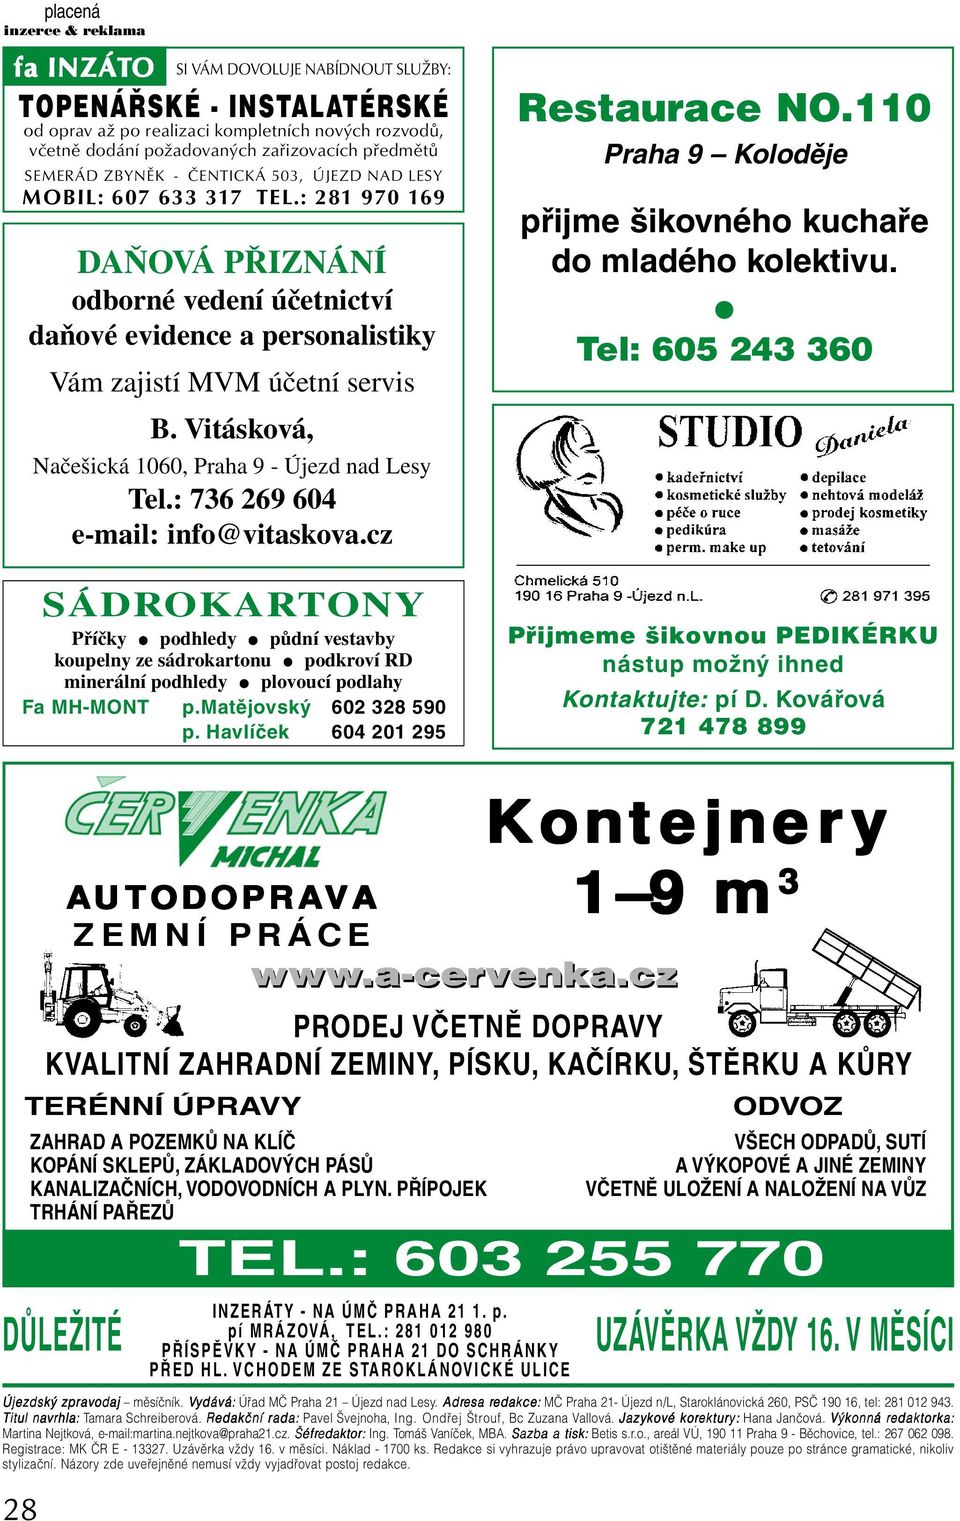 Vitásková, Načešická 1060, Praha 9 - Újezd nad Lesy Tel.: 736 269 604 e-mail: info@vitaskova.